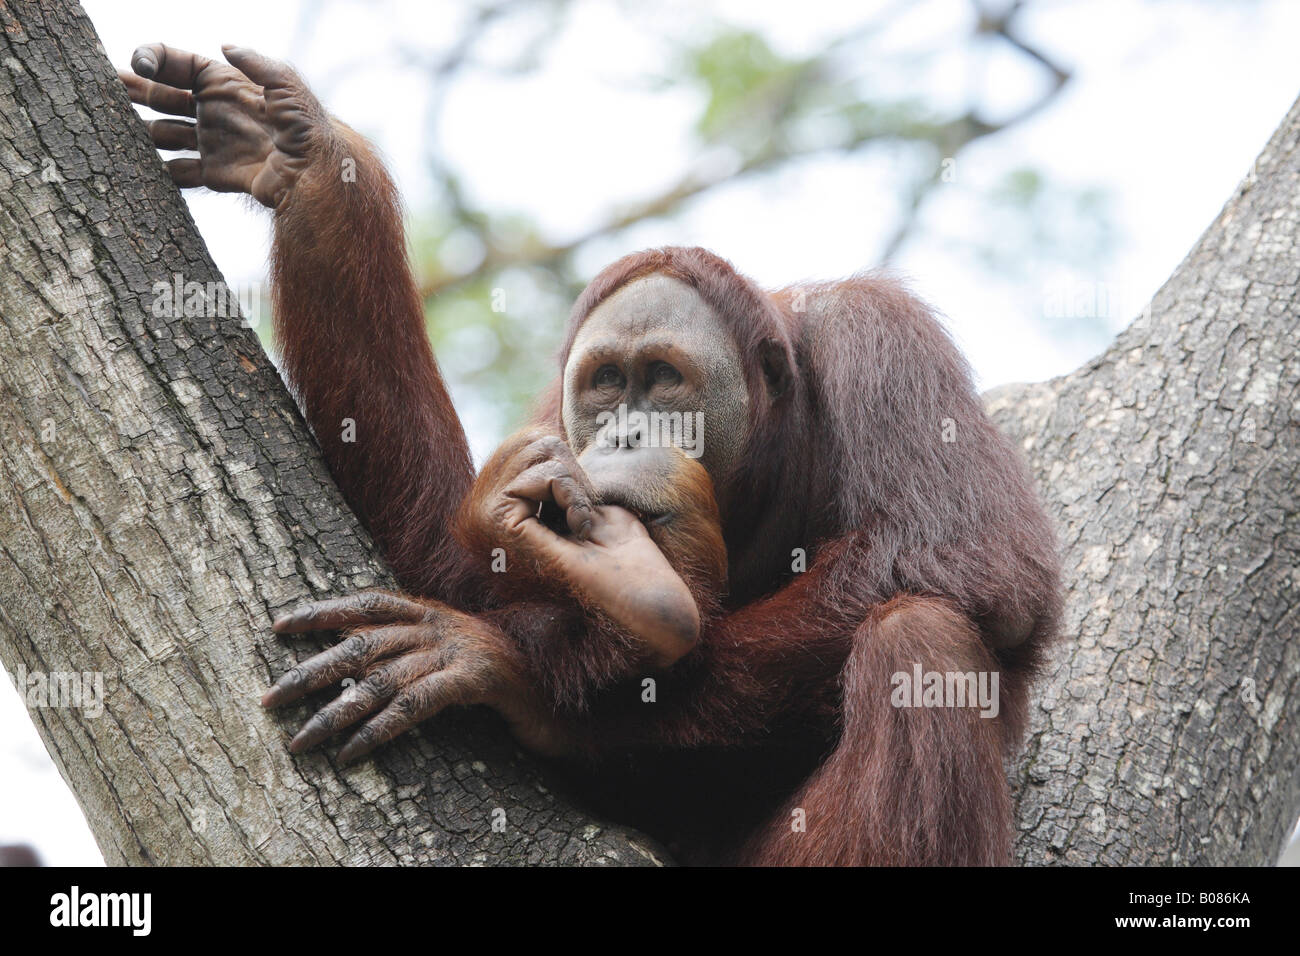 Orang-outan assis dans treefork suçant son pouce Banque D'Images